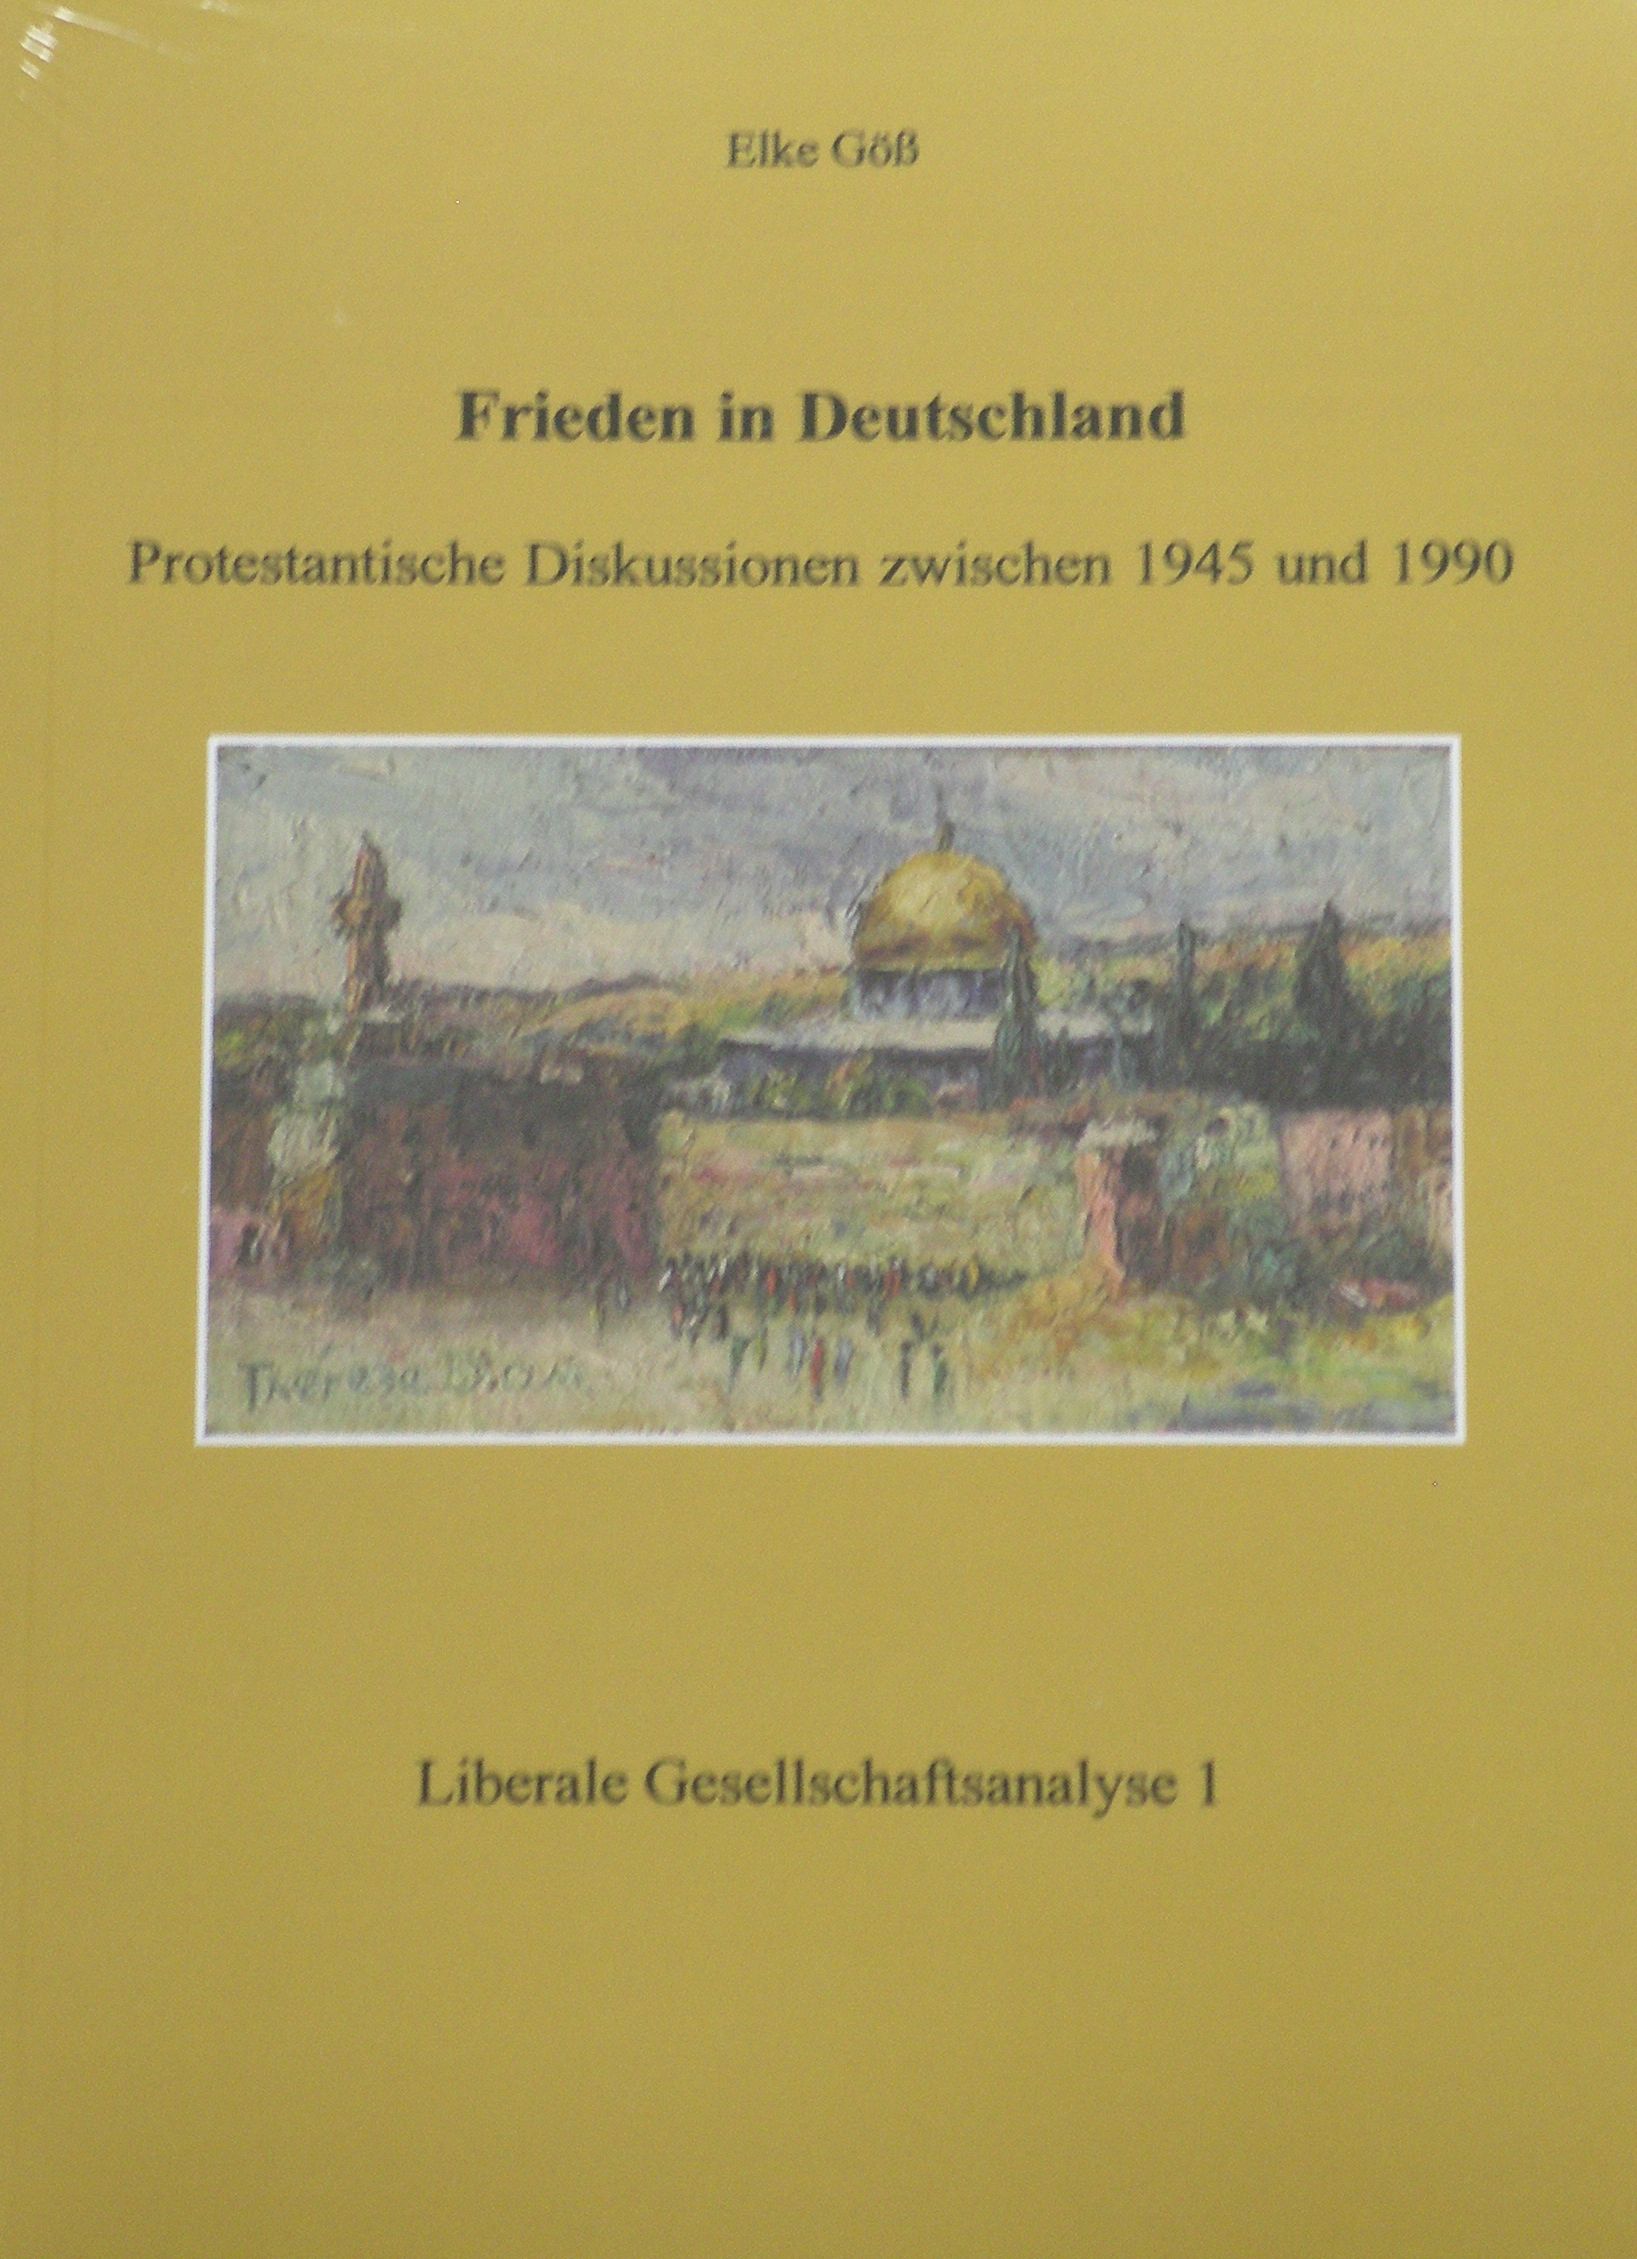 Elke Göß (2007): Frieden in Deutschland. Protestantische Diskussionen zwischen 1945 und 1990, München